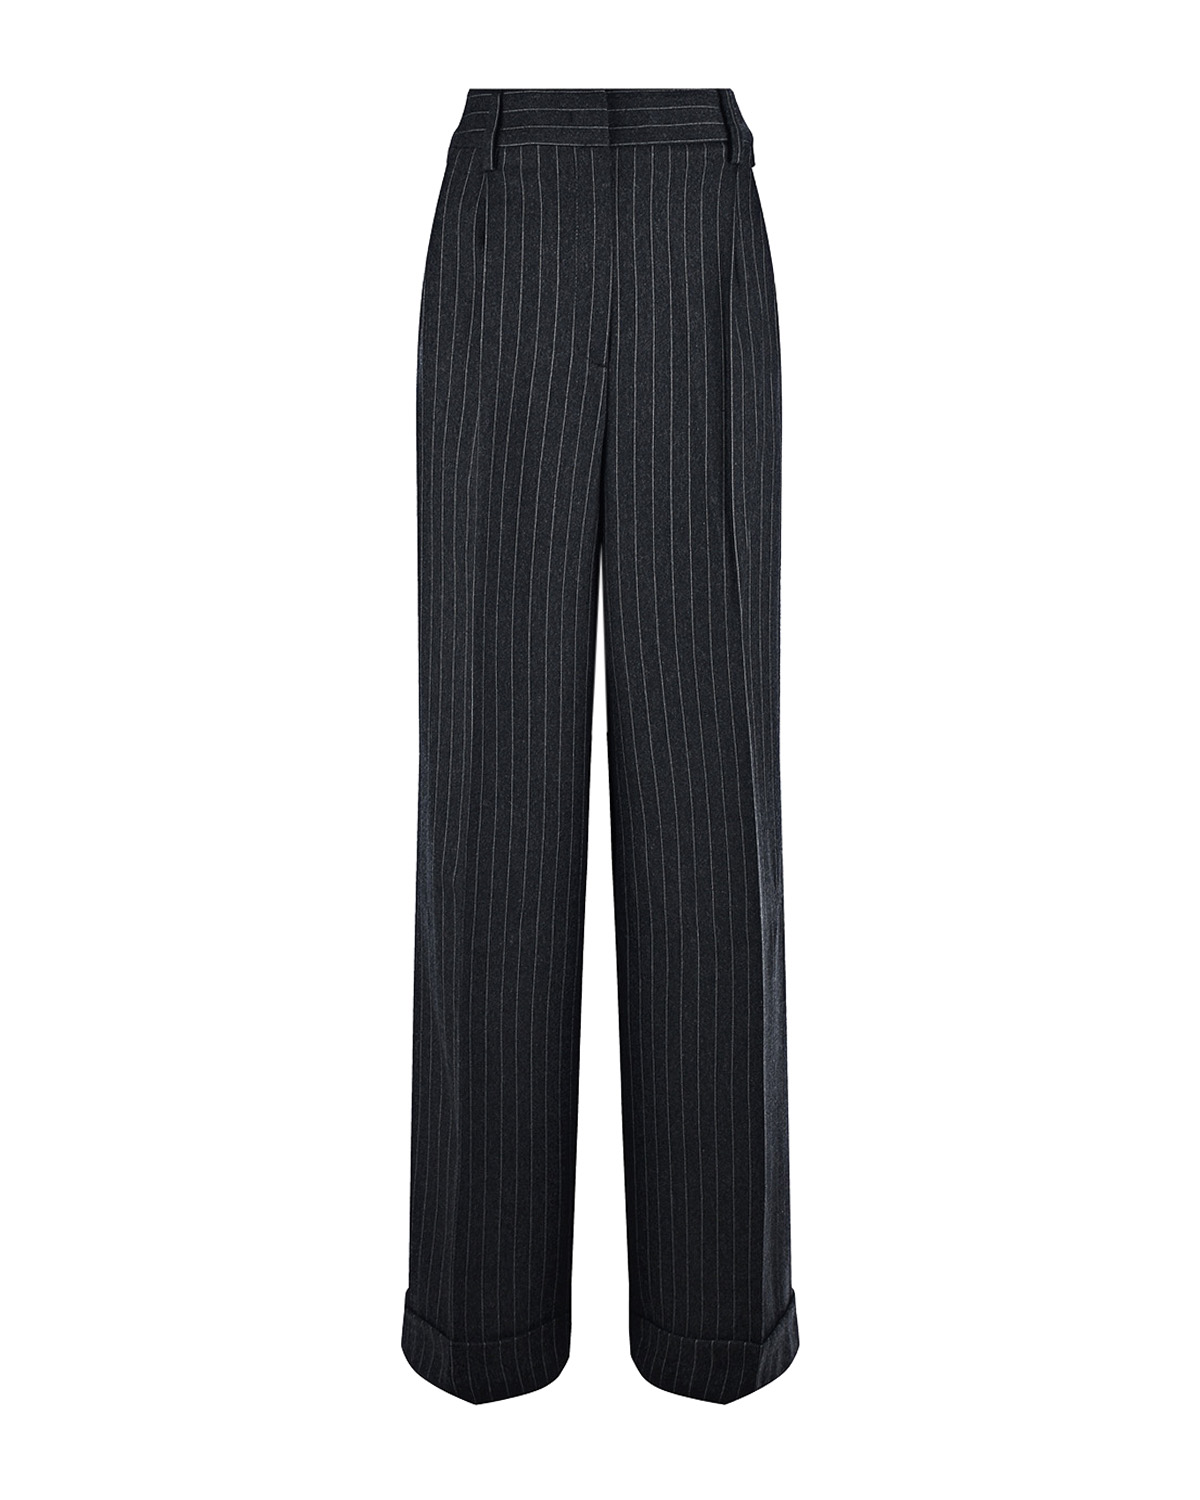 Черные брюки в полоску Vivetta, размер 46, цвет черный - фото 1